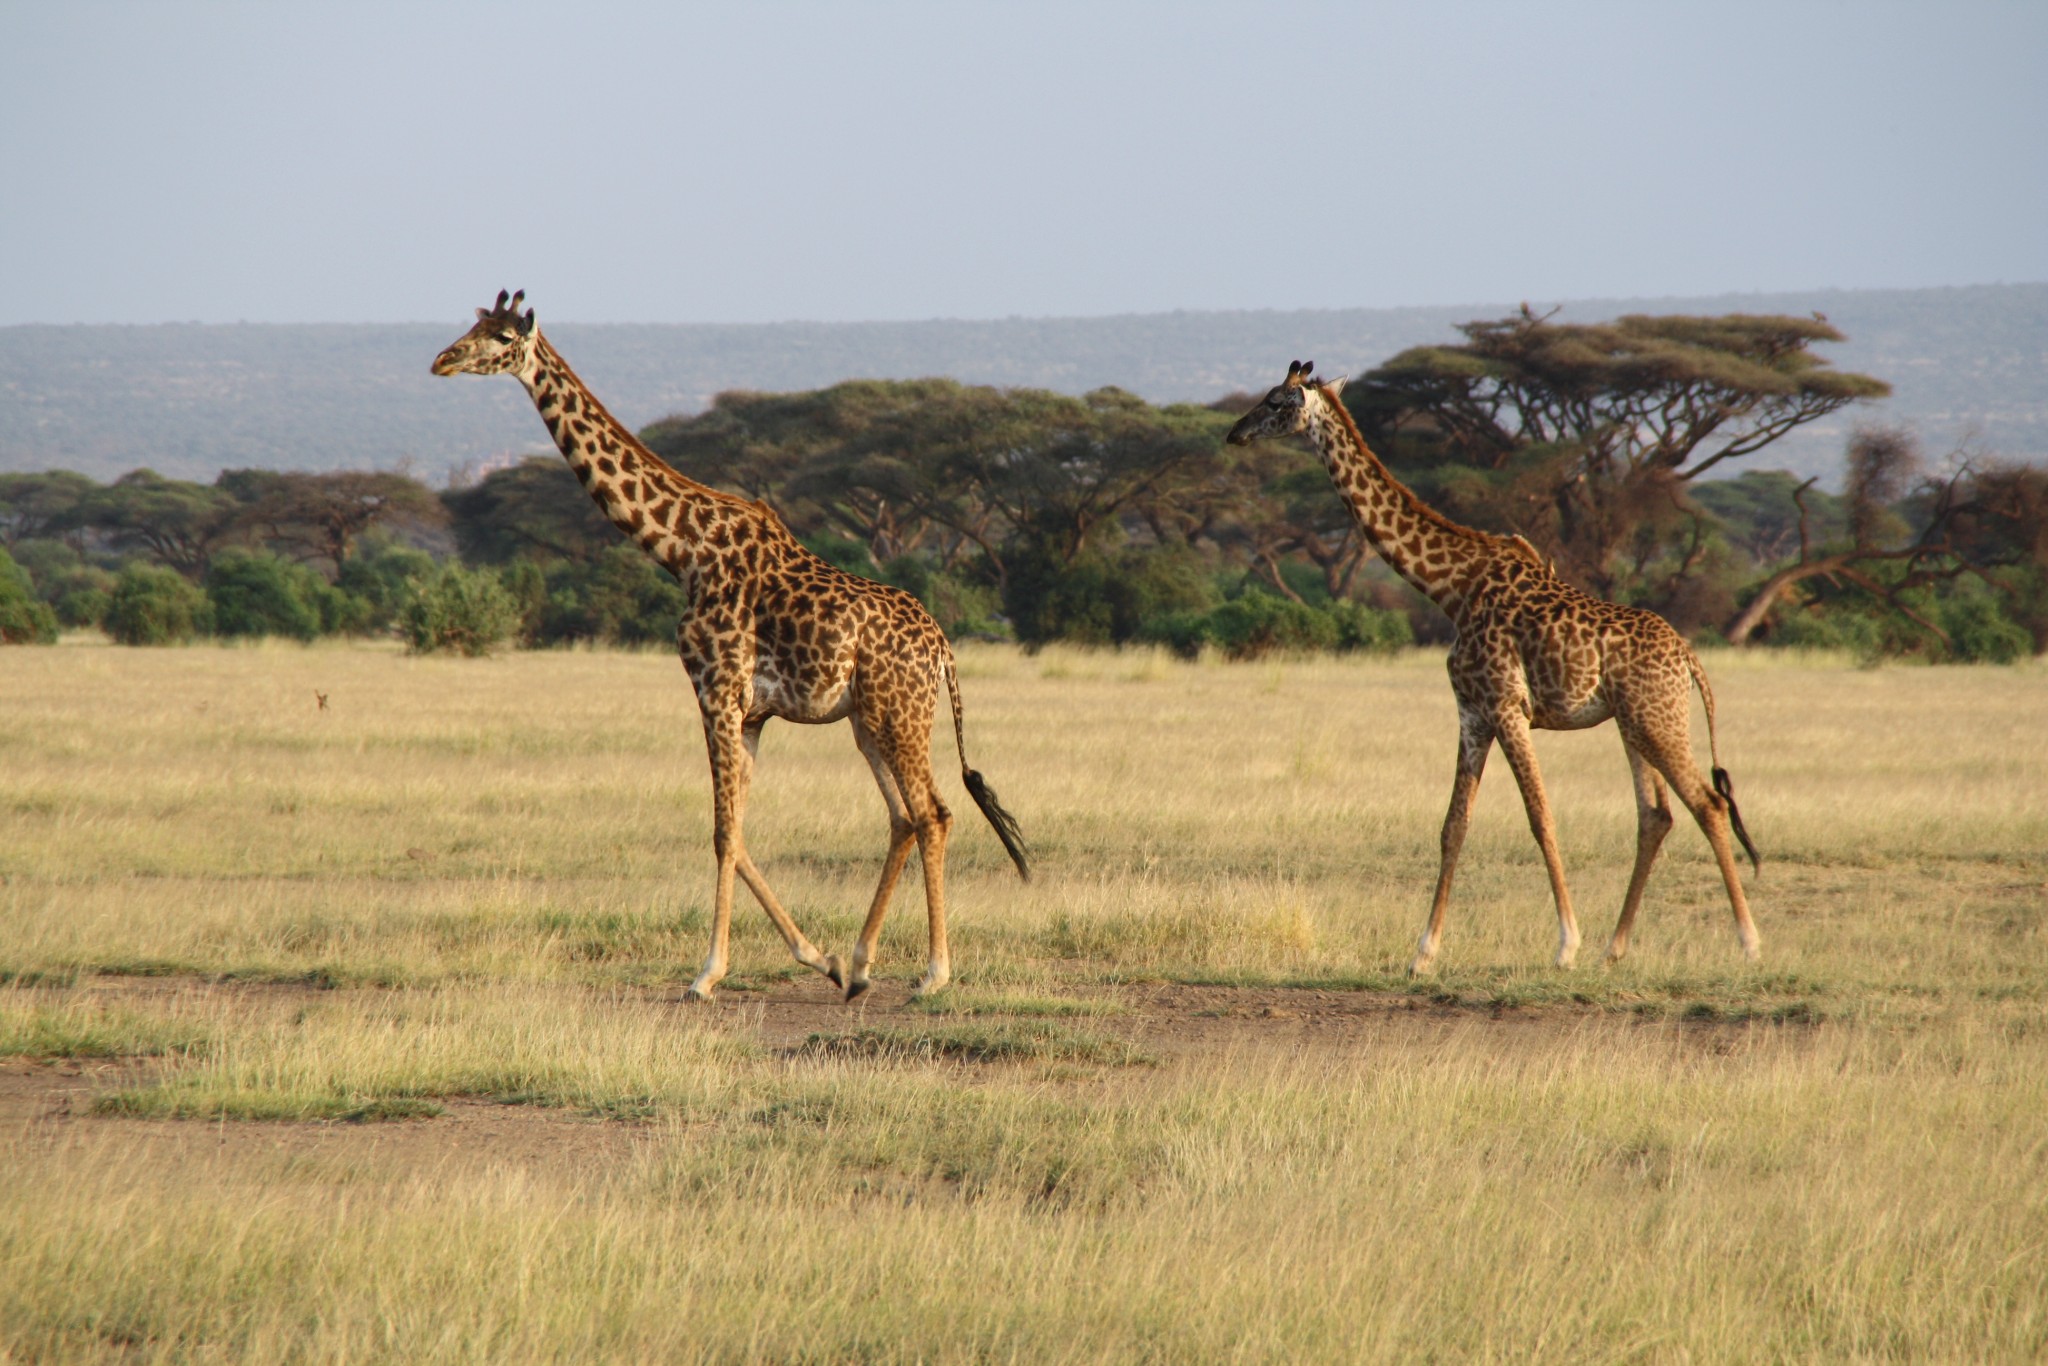 YHA Kenya Travel/Kenya Adventure Safaris/Group Tours Safaris/ Small Group Adventures/ Group Guided Tours Safaris.